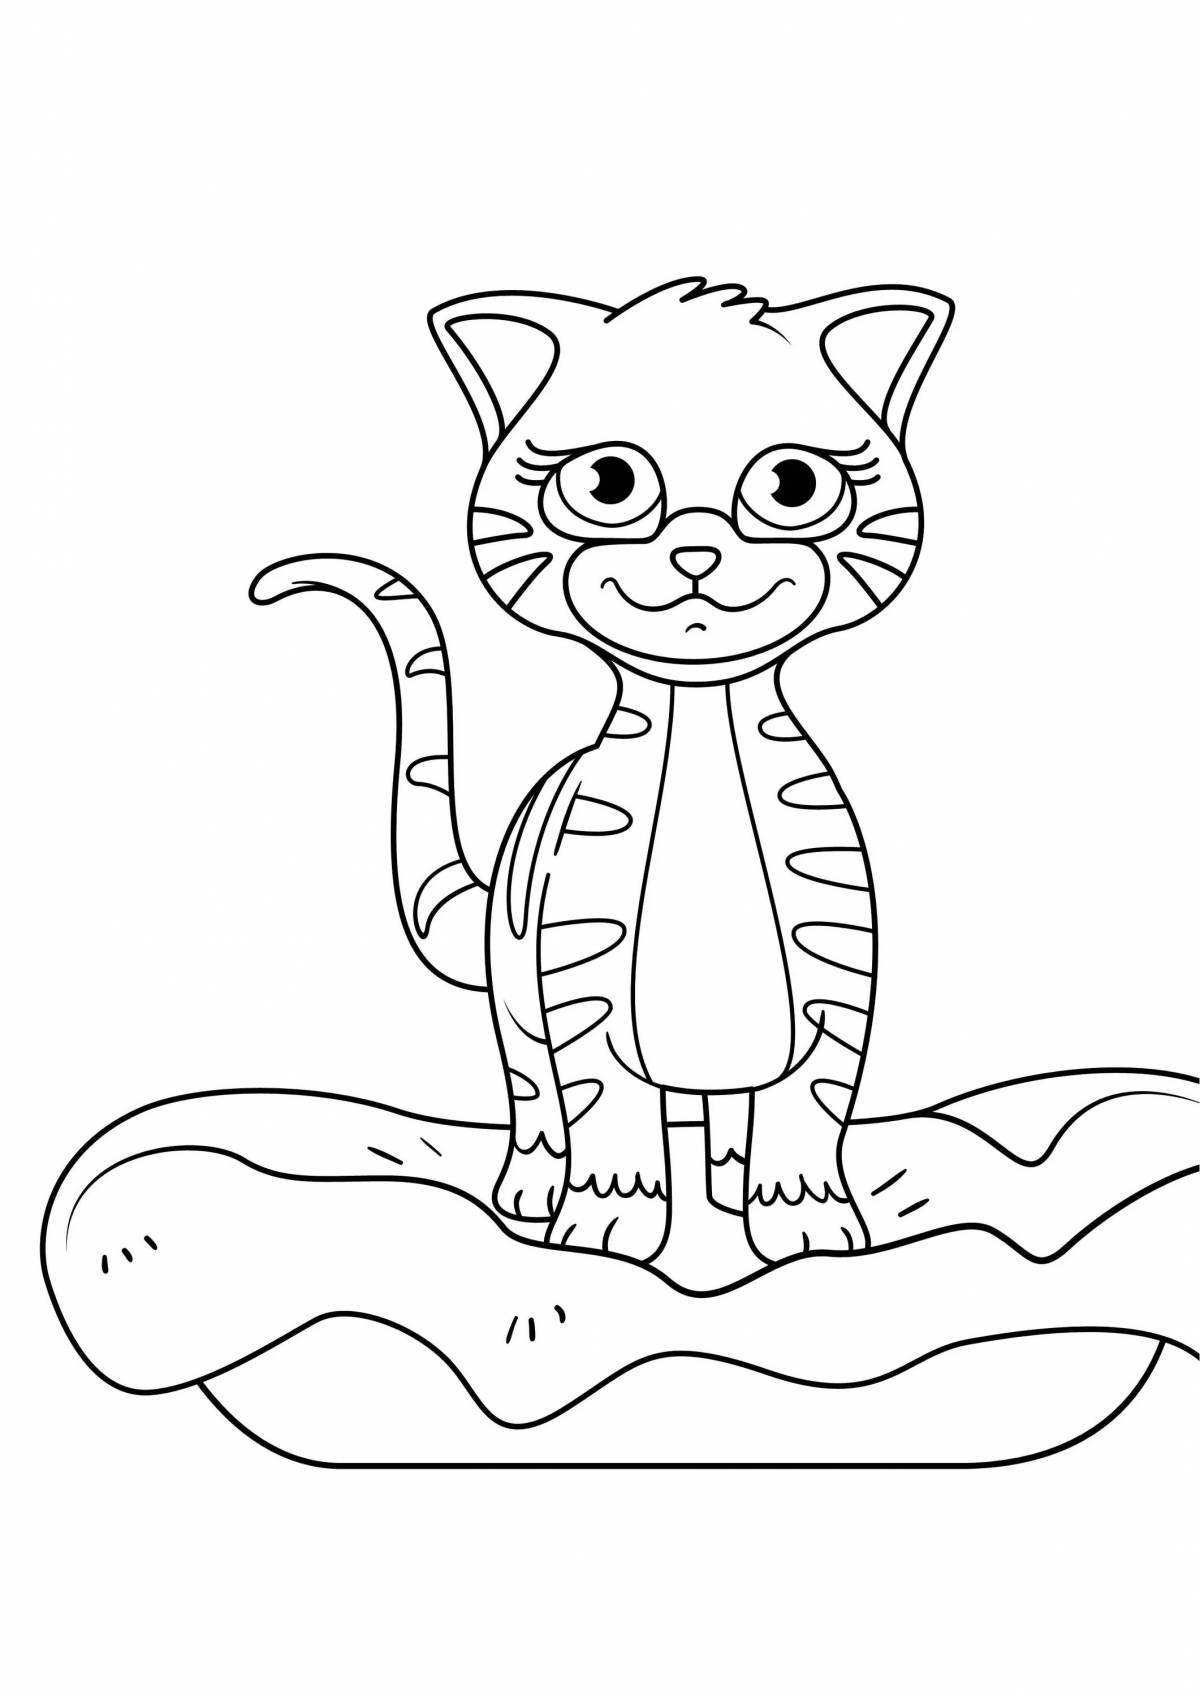 Раскраска праздничная кошка фелисити